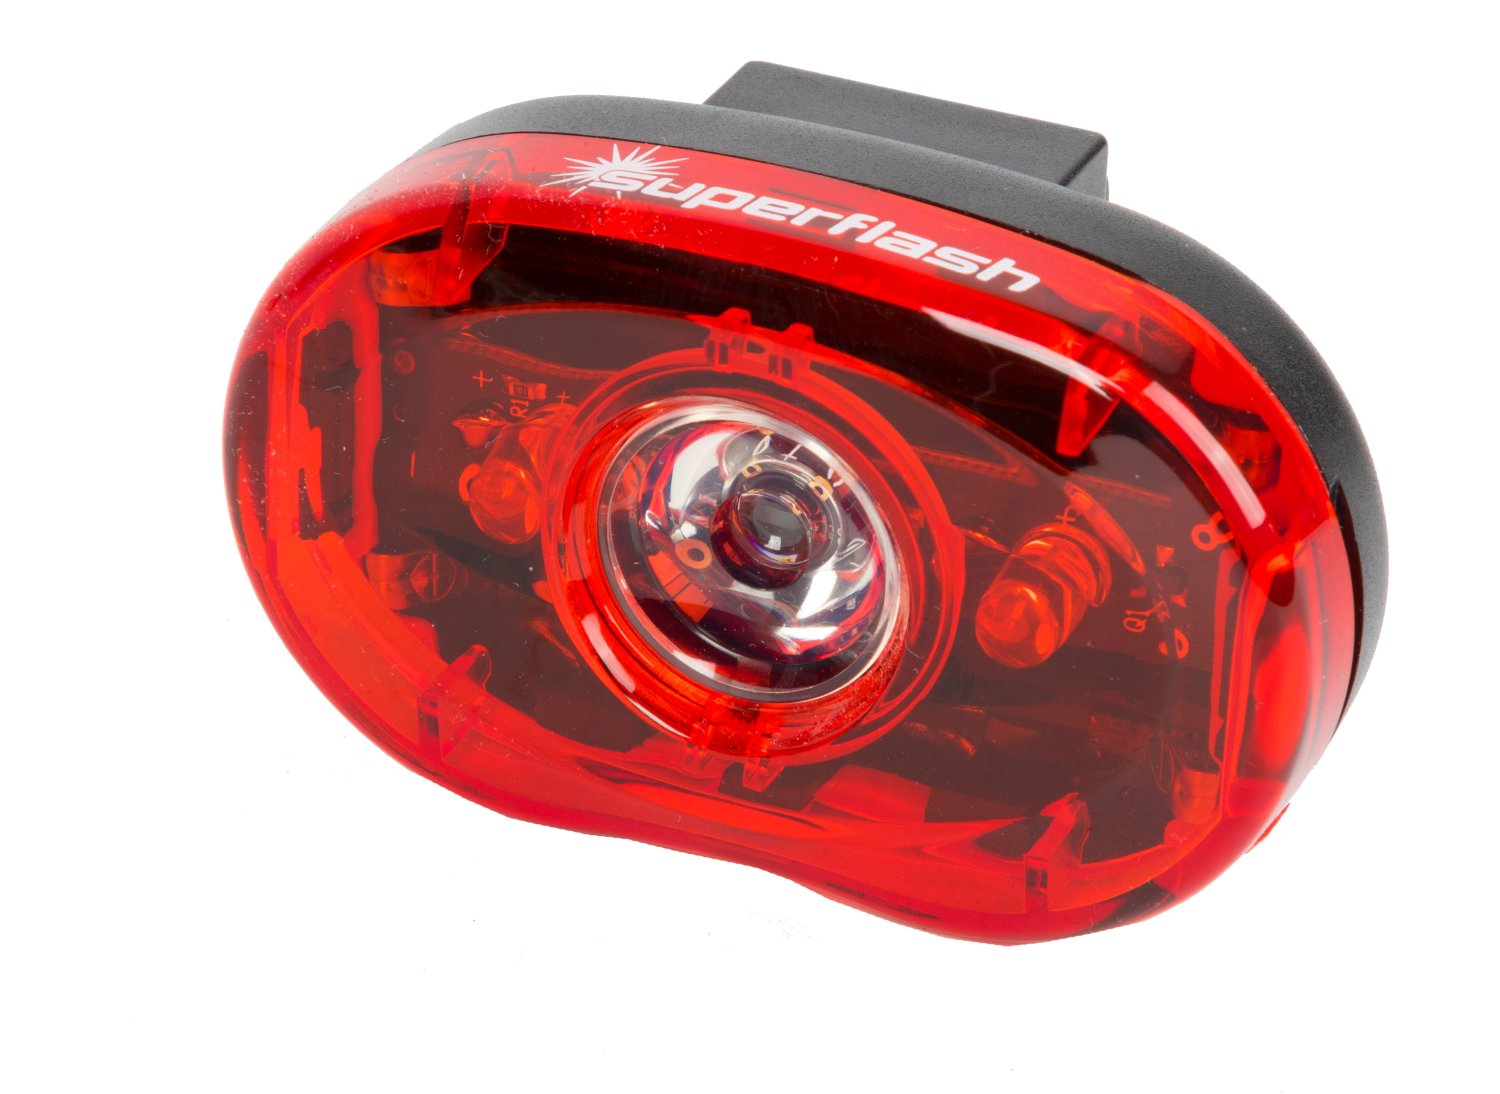 Фонарь задний для велосипеда SMART 3 диода-0.5W/2 функции красный с батареями фонарь задний cat eye tl ld570 br 5 r reflex auto красный ce5445700